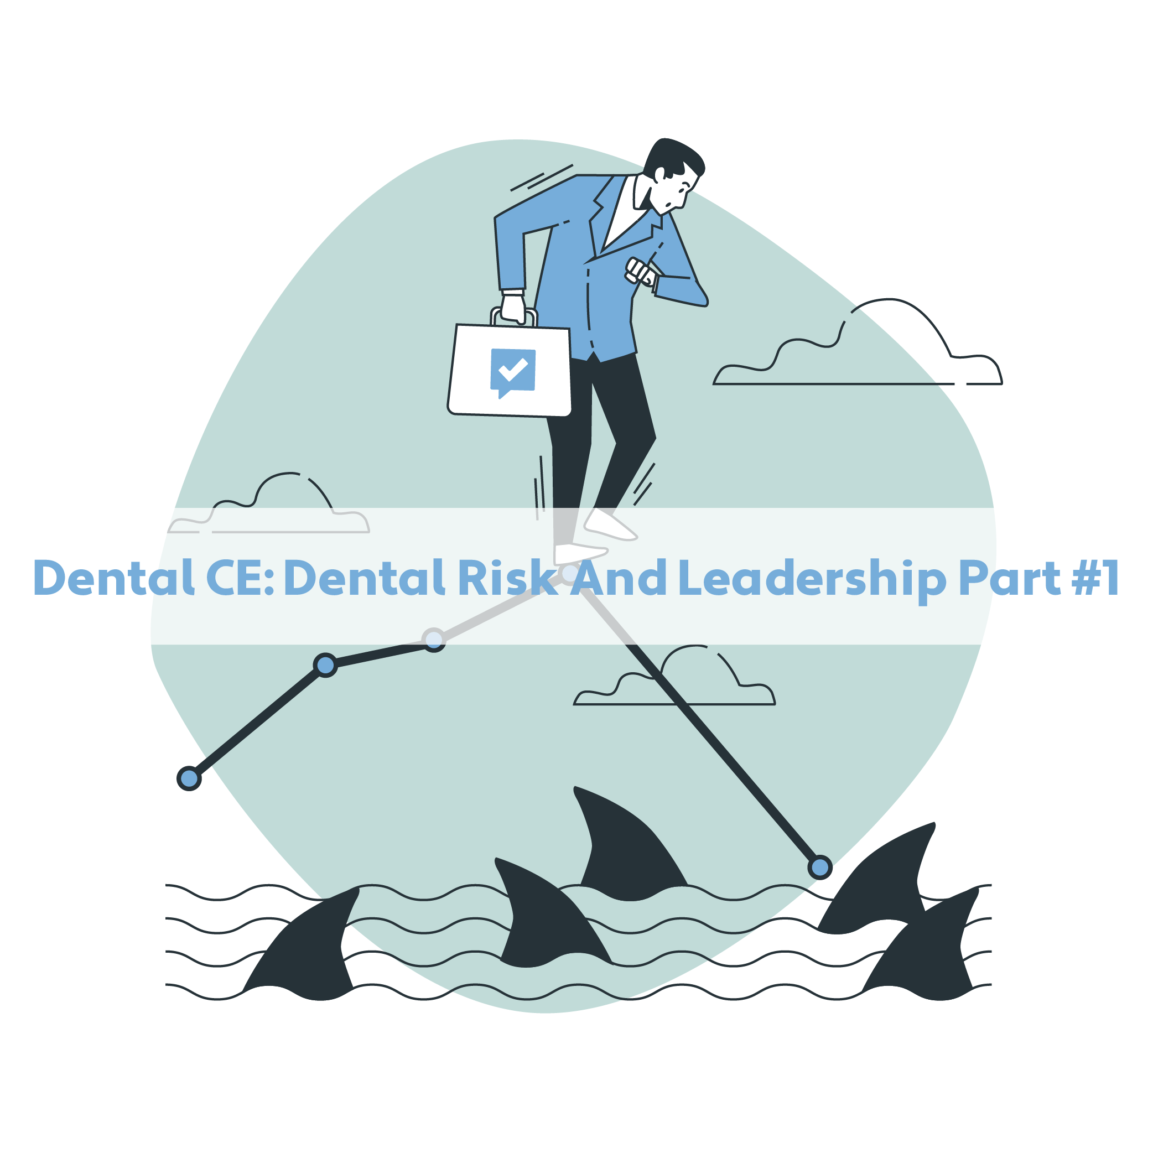 Dental CE: Dental Risk And Leadership Part #1